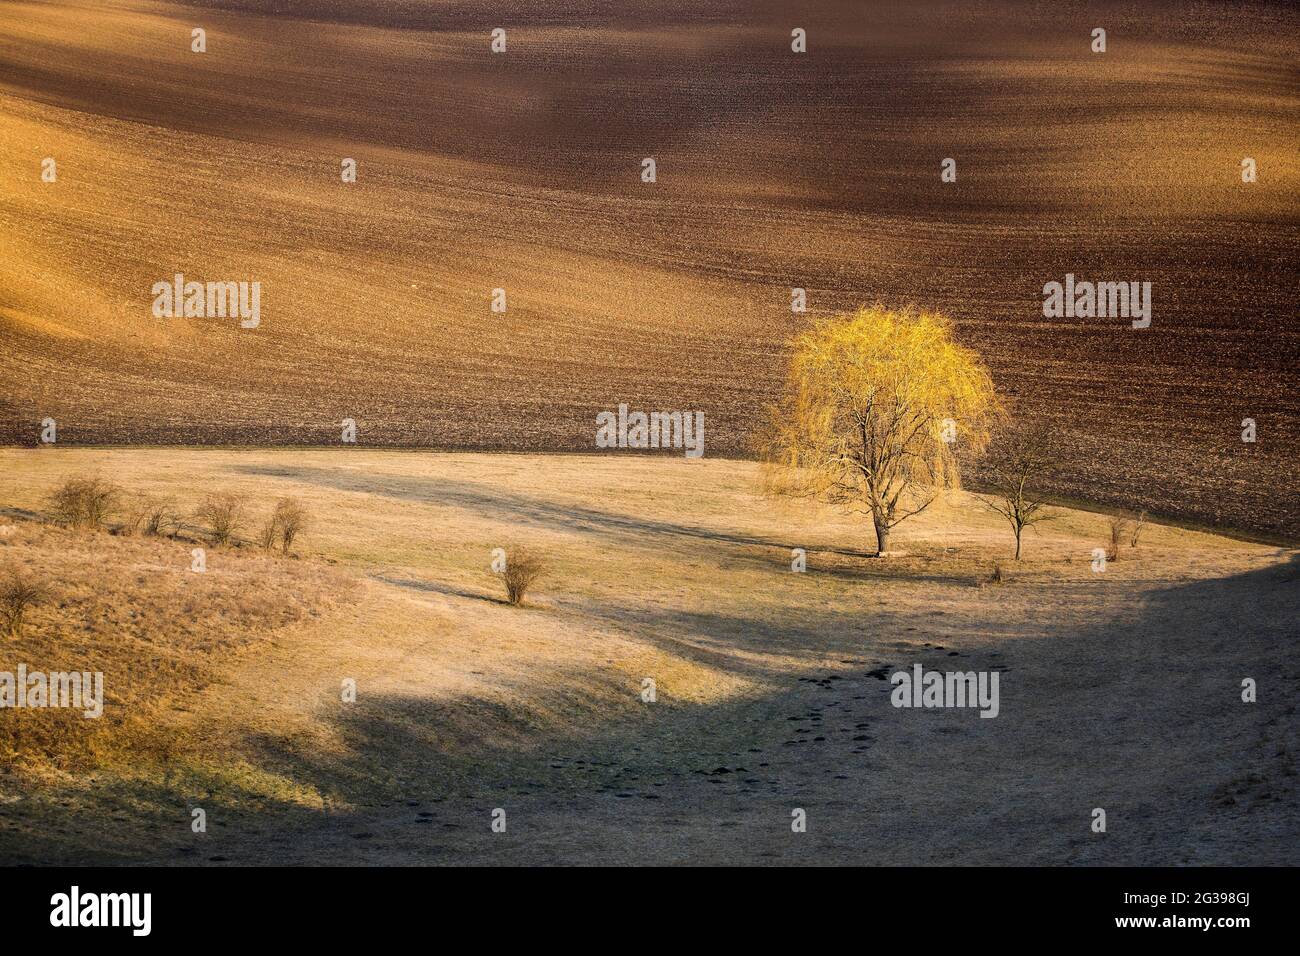 Toscane morave, paysage agricole dans le sud de la République tchèque Banque D'Images